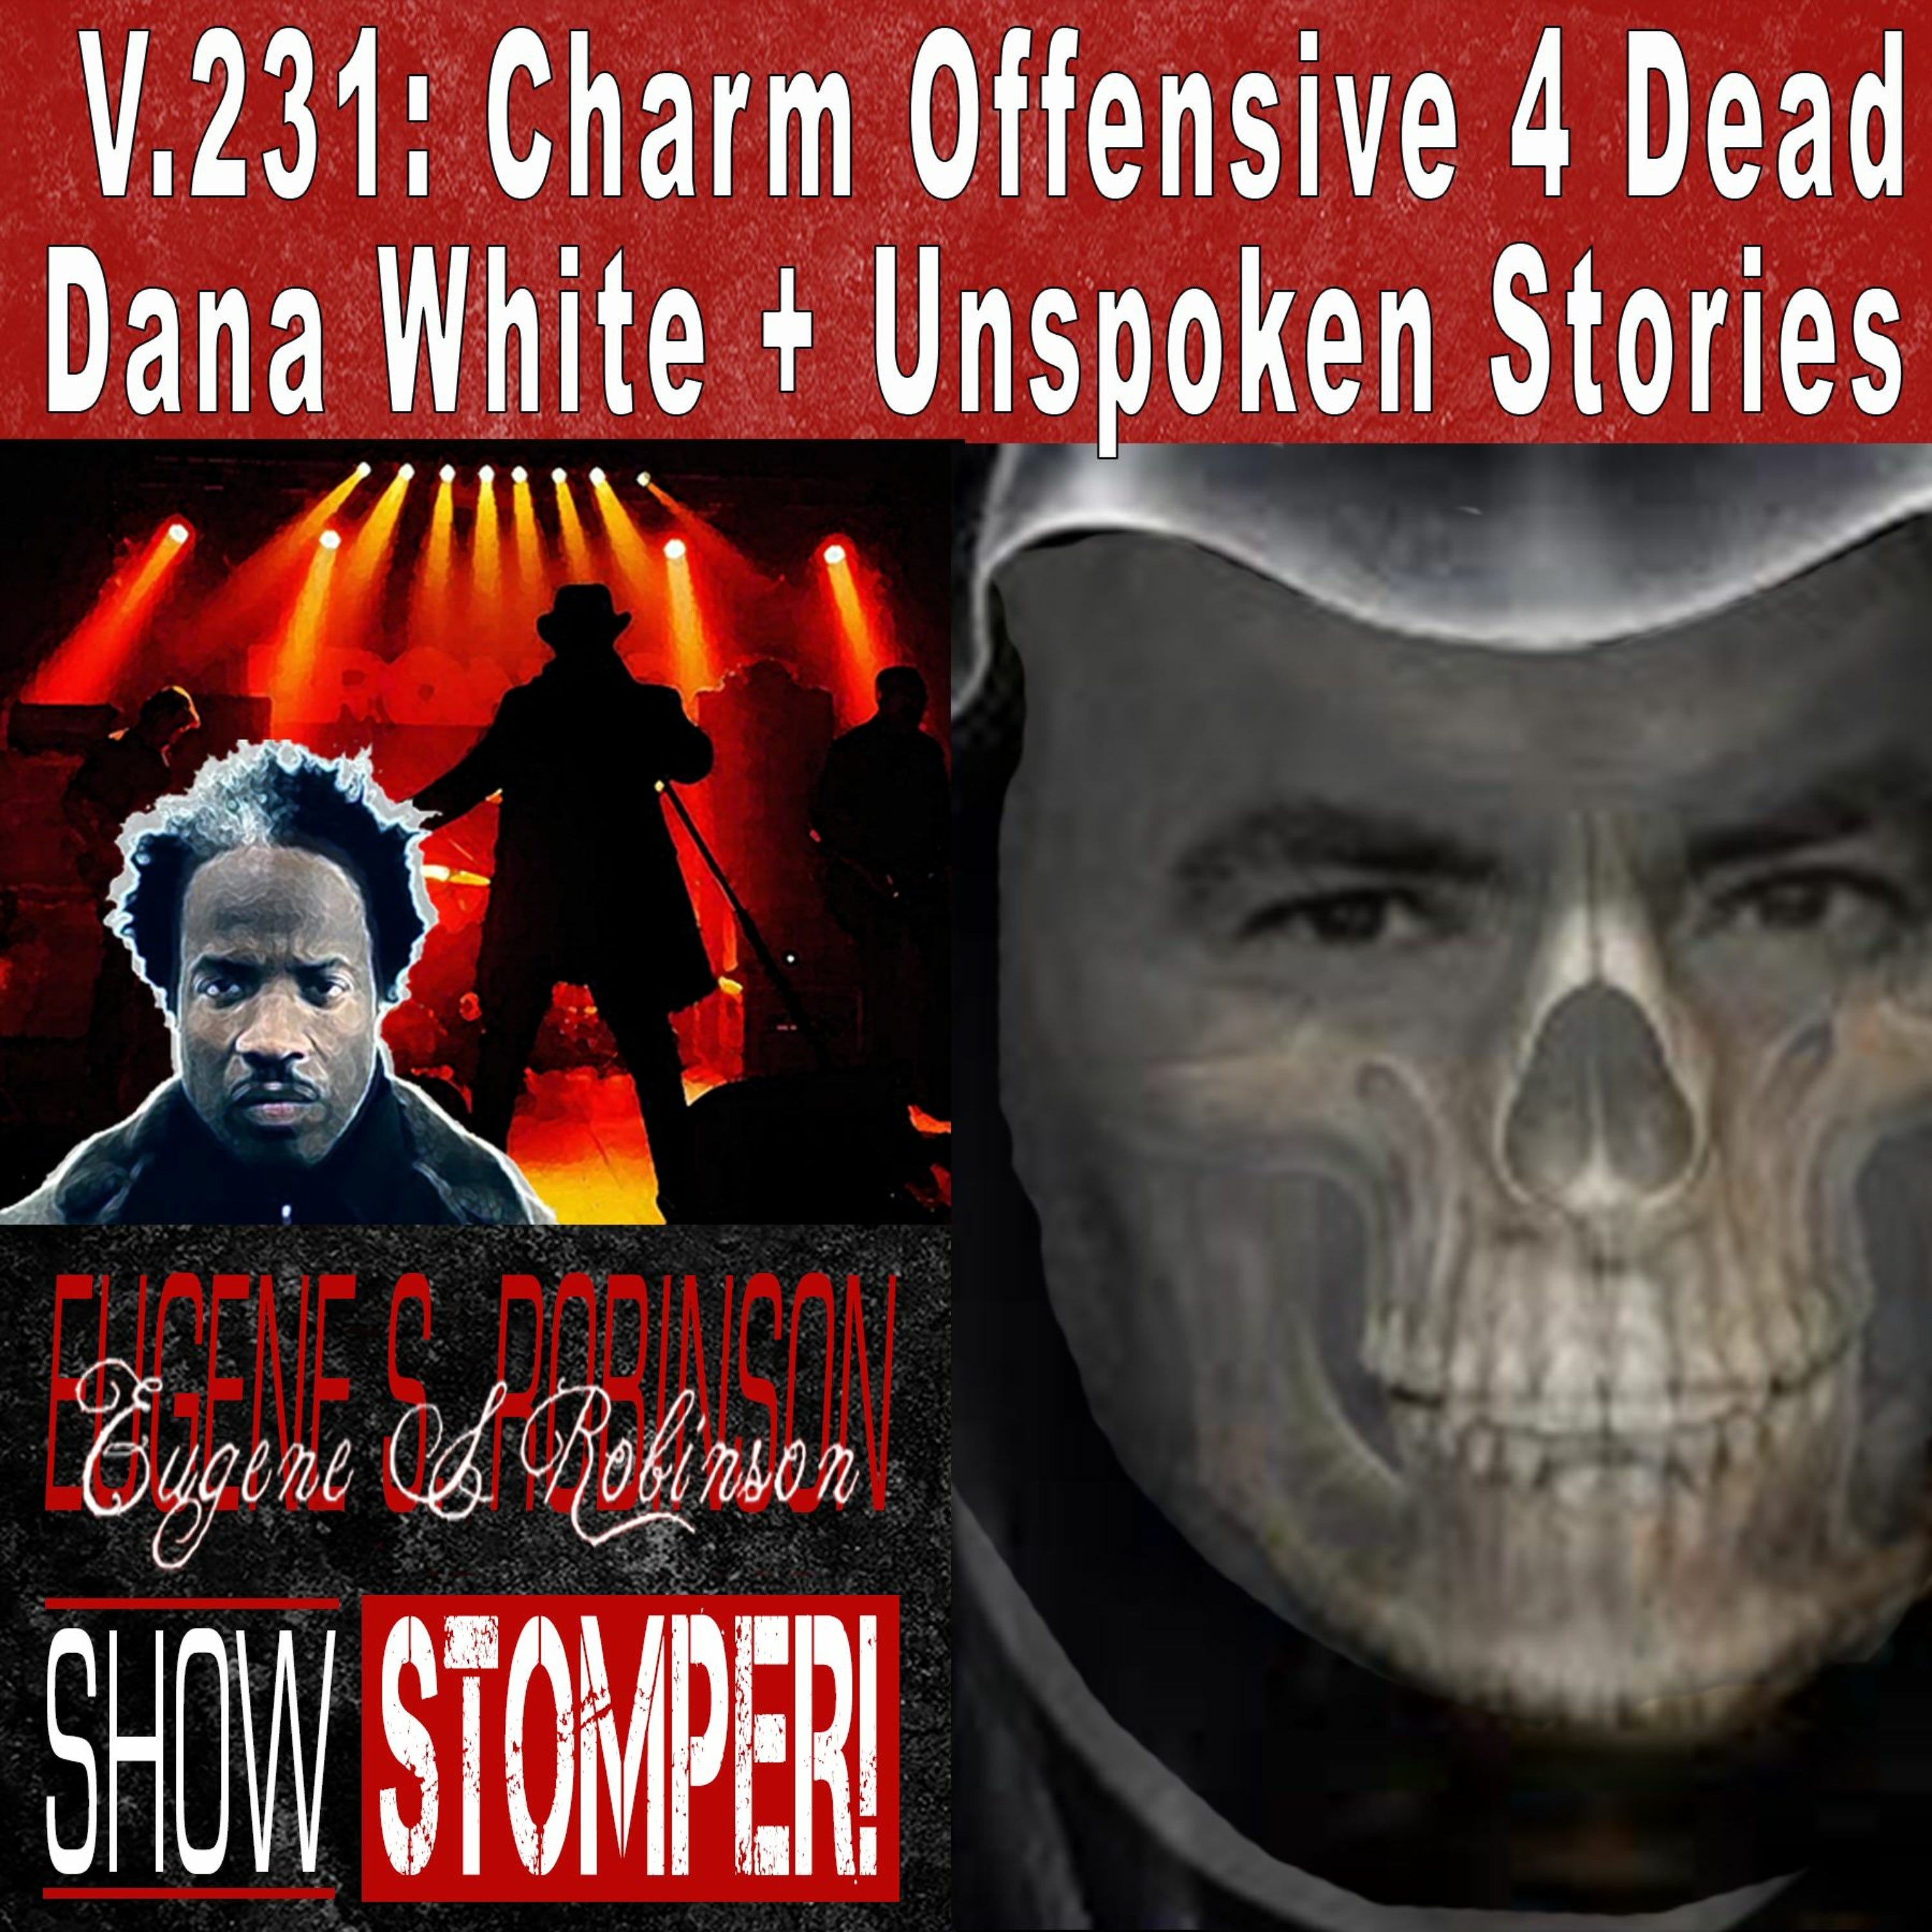 V.231: Charm Offensive 4 Dead Dana White + Unspoken Stories On The Eugene S. Robinson Show Stomper!